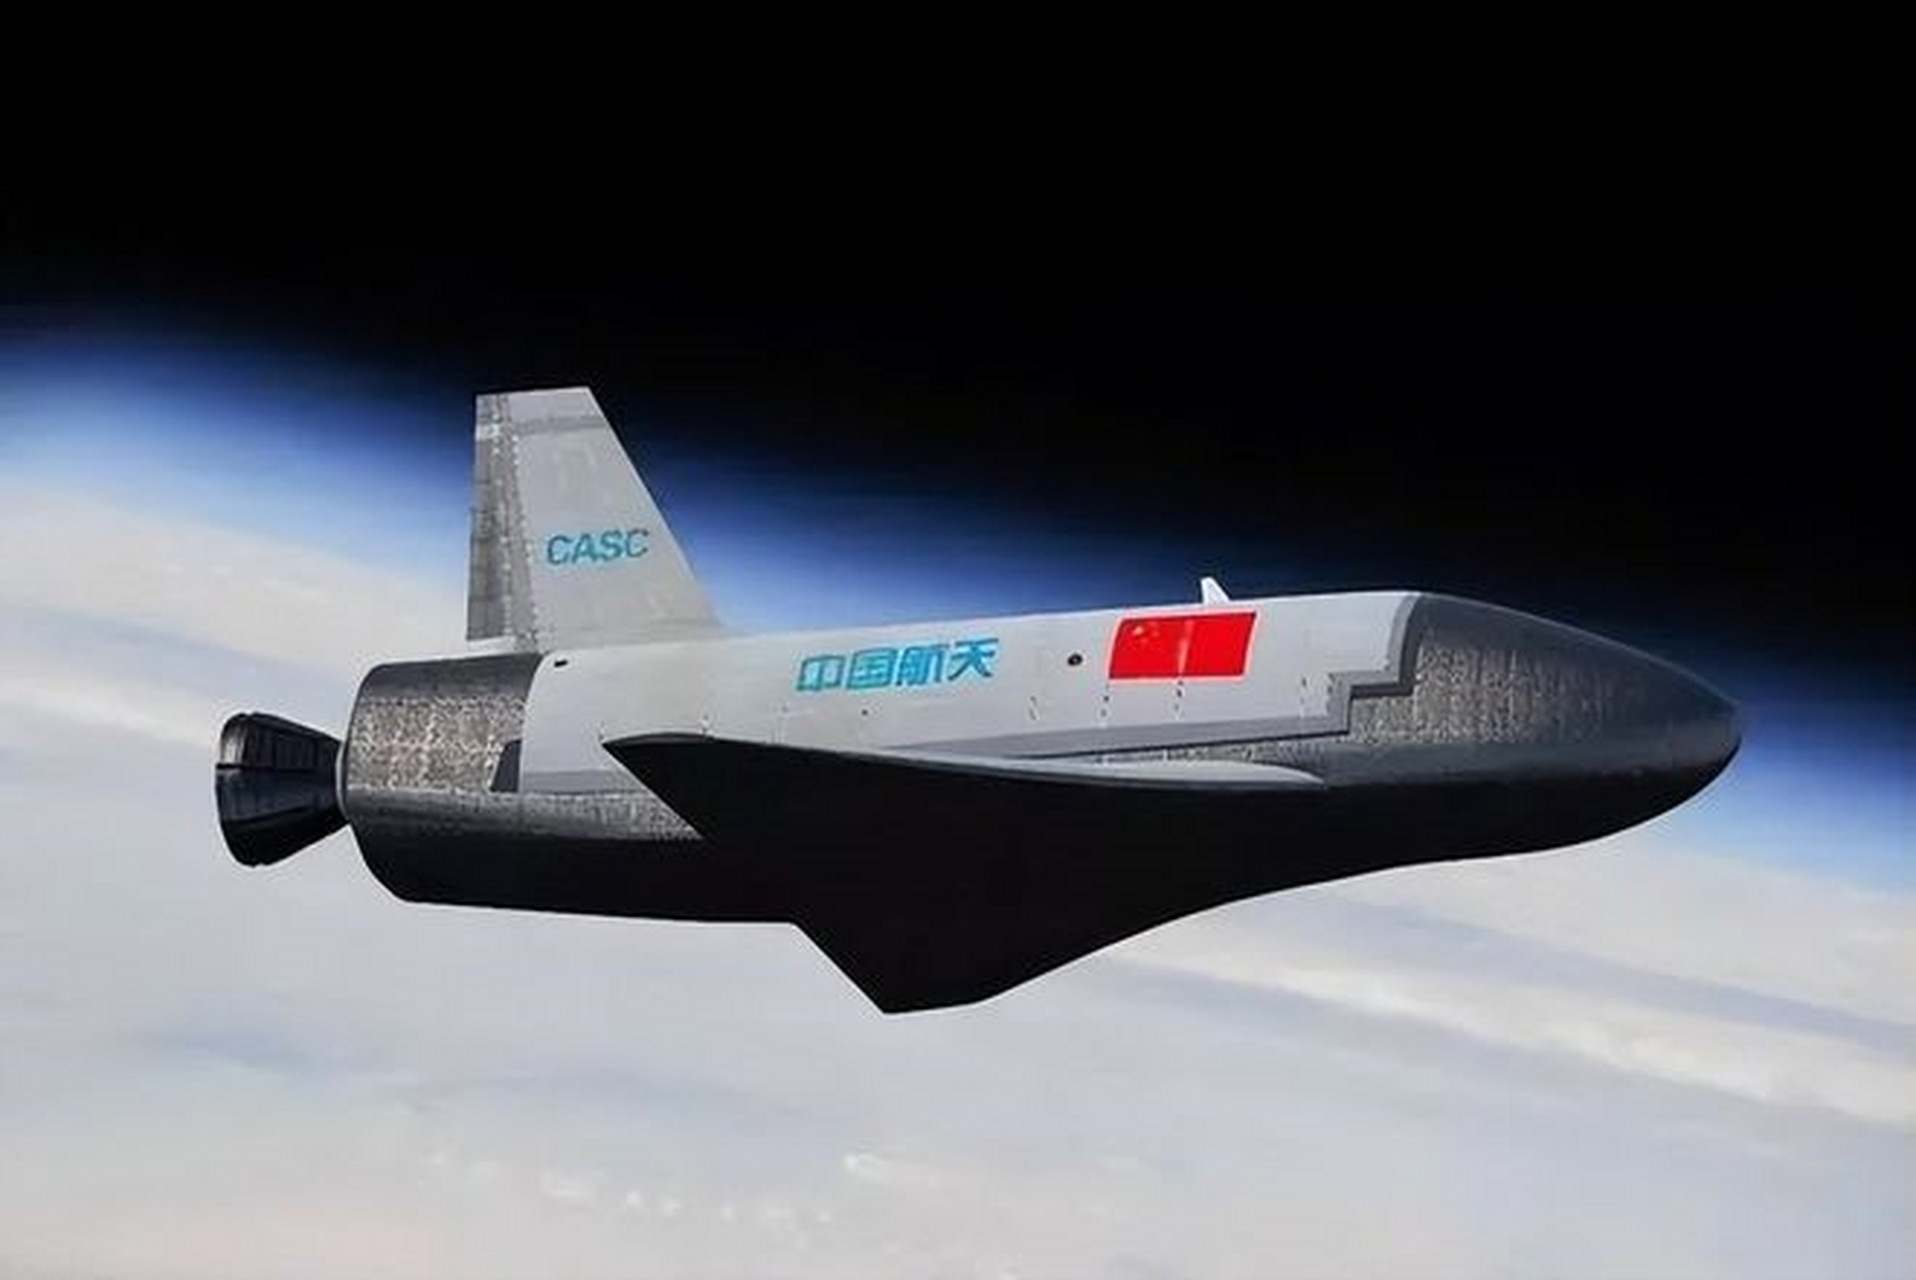 按照cnn的说法,知名空间飞行器跟踪网站n2yo近期对中国空天飞机进行